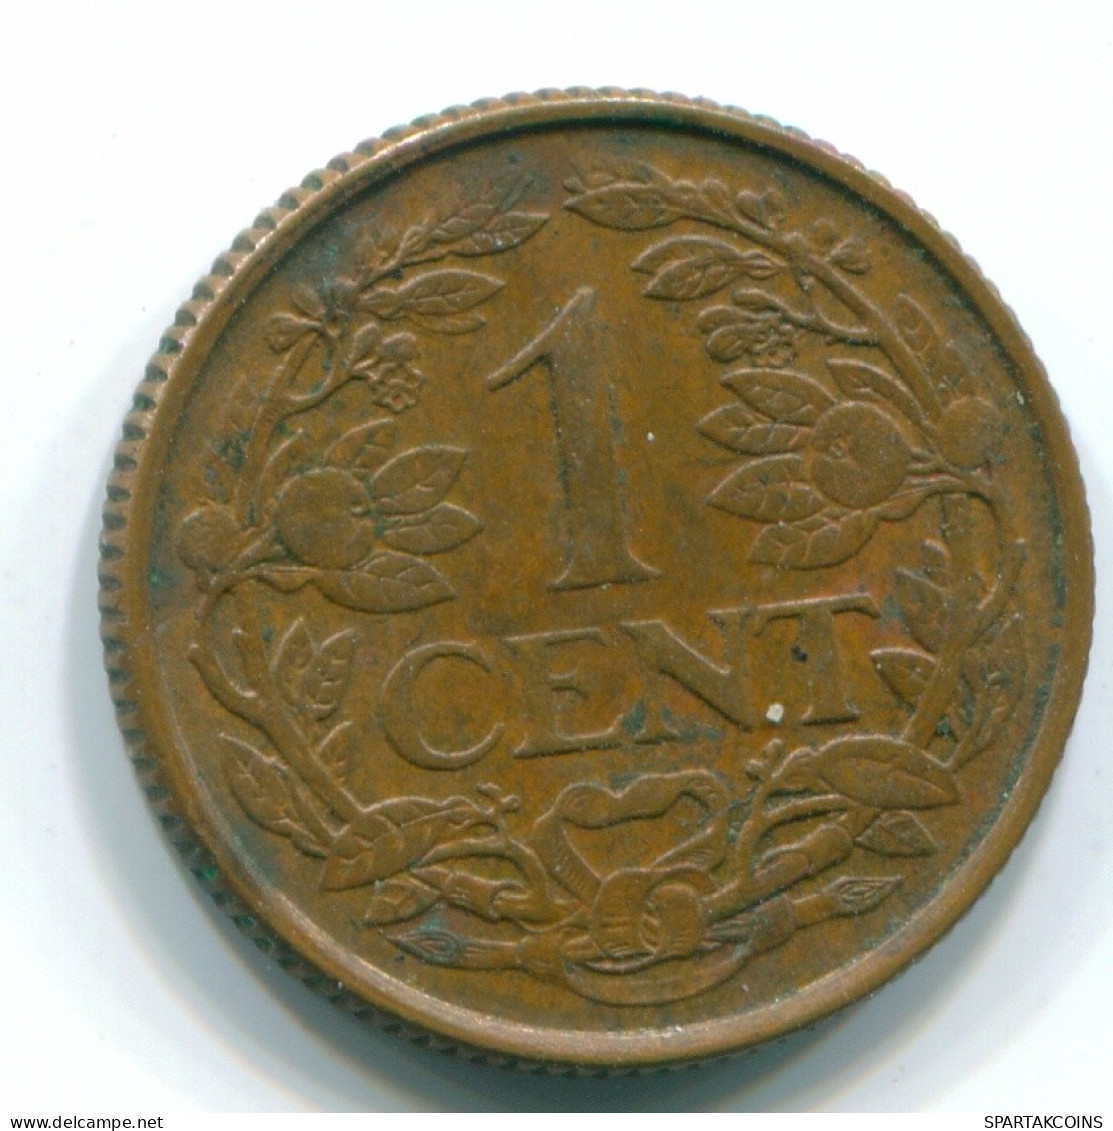 1 CENT 1965 NETHERLANDS ANTILLES Bronze Fish Colonial Coin #S11125.U.A - Antilles Néerlandaises